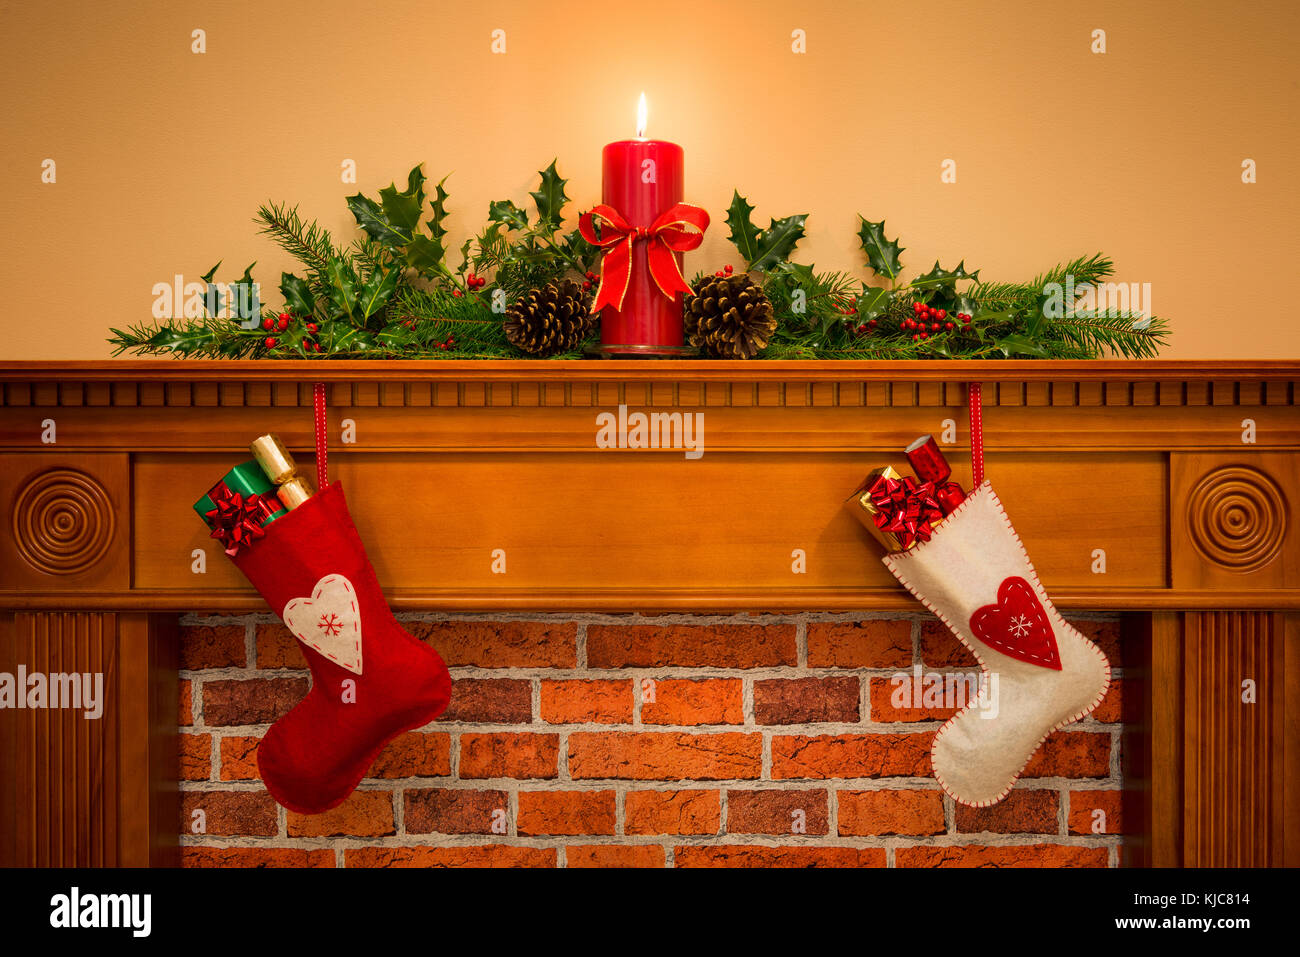 Deux bas de Noël avec gift wrapped présente suspendu par une cheminée sur une cheminée, plus que les bougies de fête avec garland y compris holly Banque D'Images